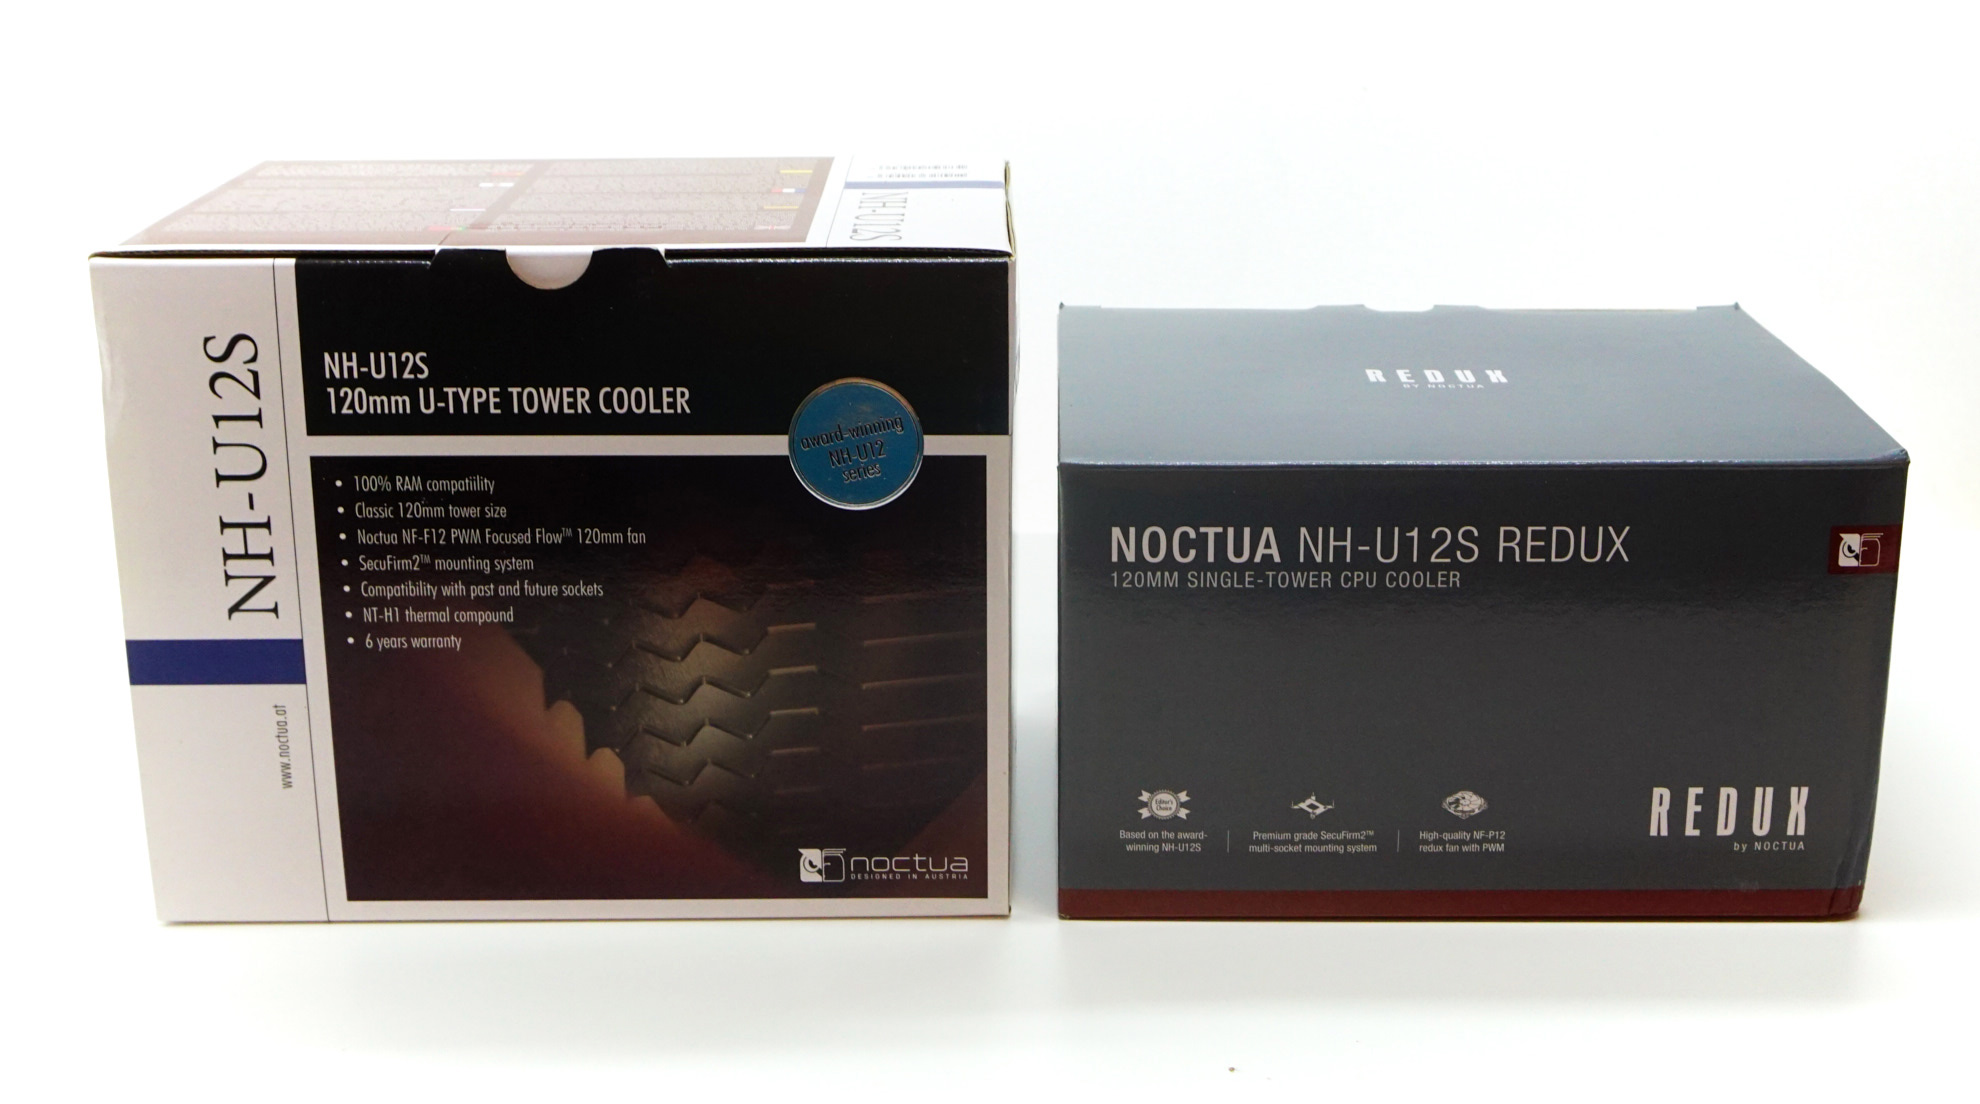 Noctua NH-U12S Redux Review